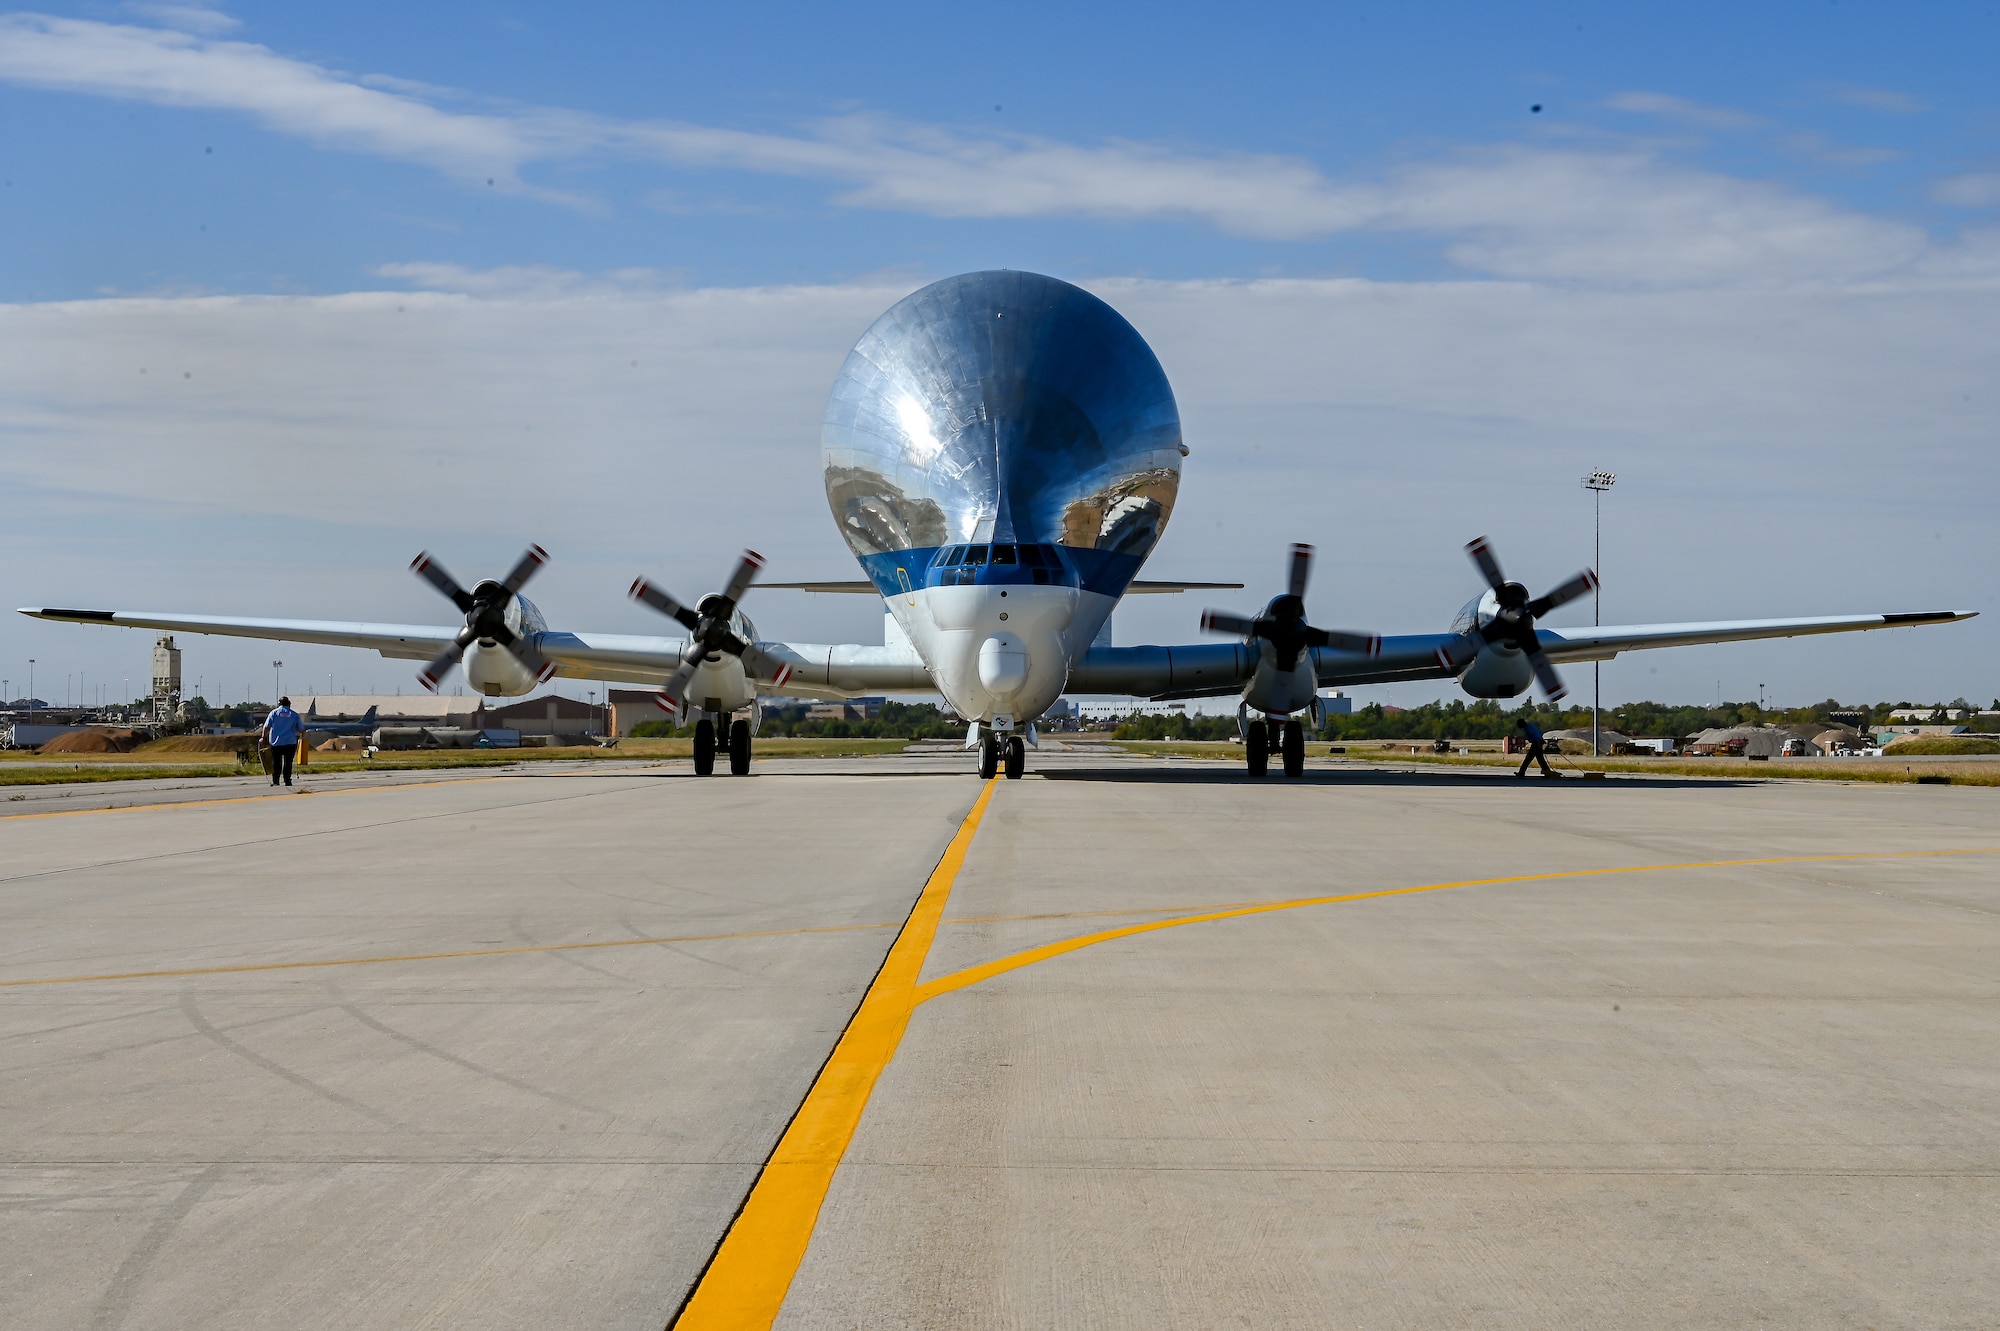 NASA Super Guppy aircraft taxiing